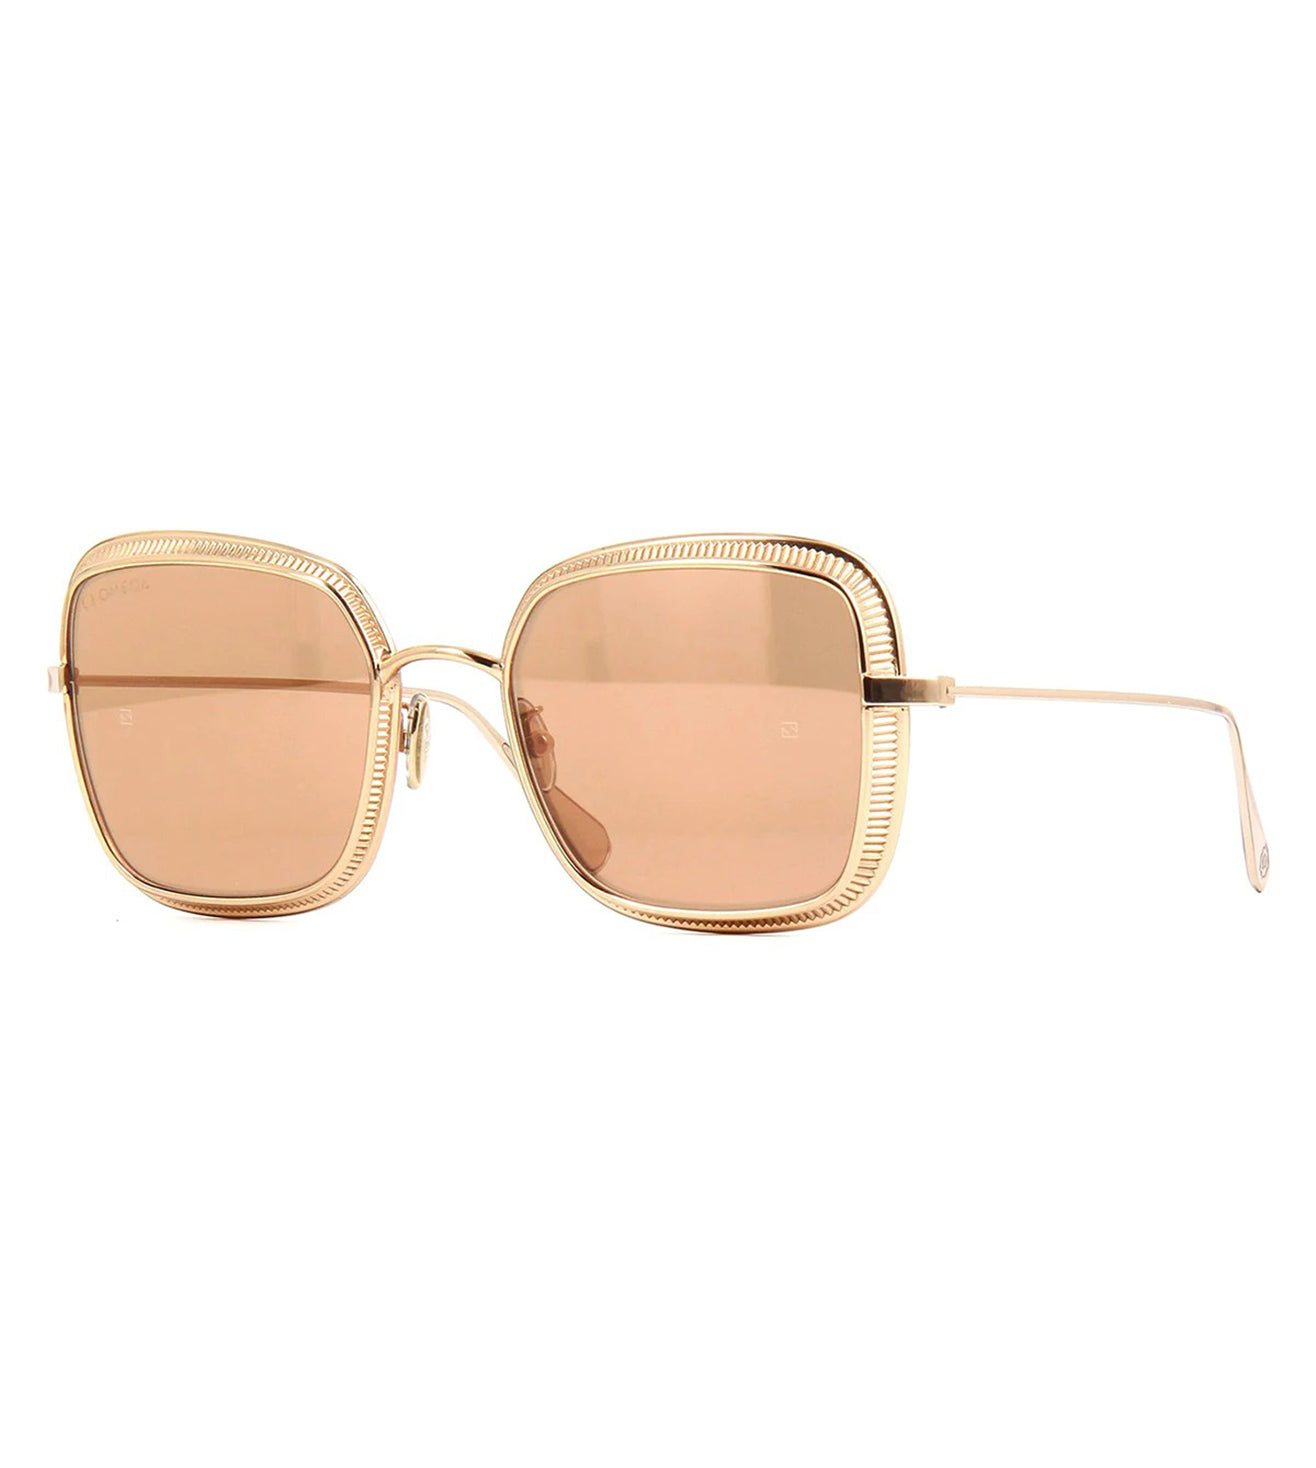 Omega Women's Silver Square Sunglasses